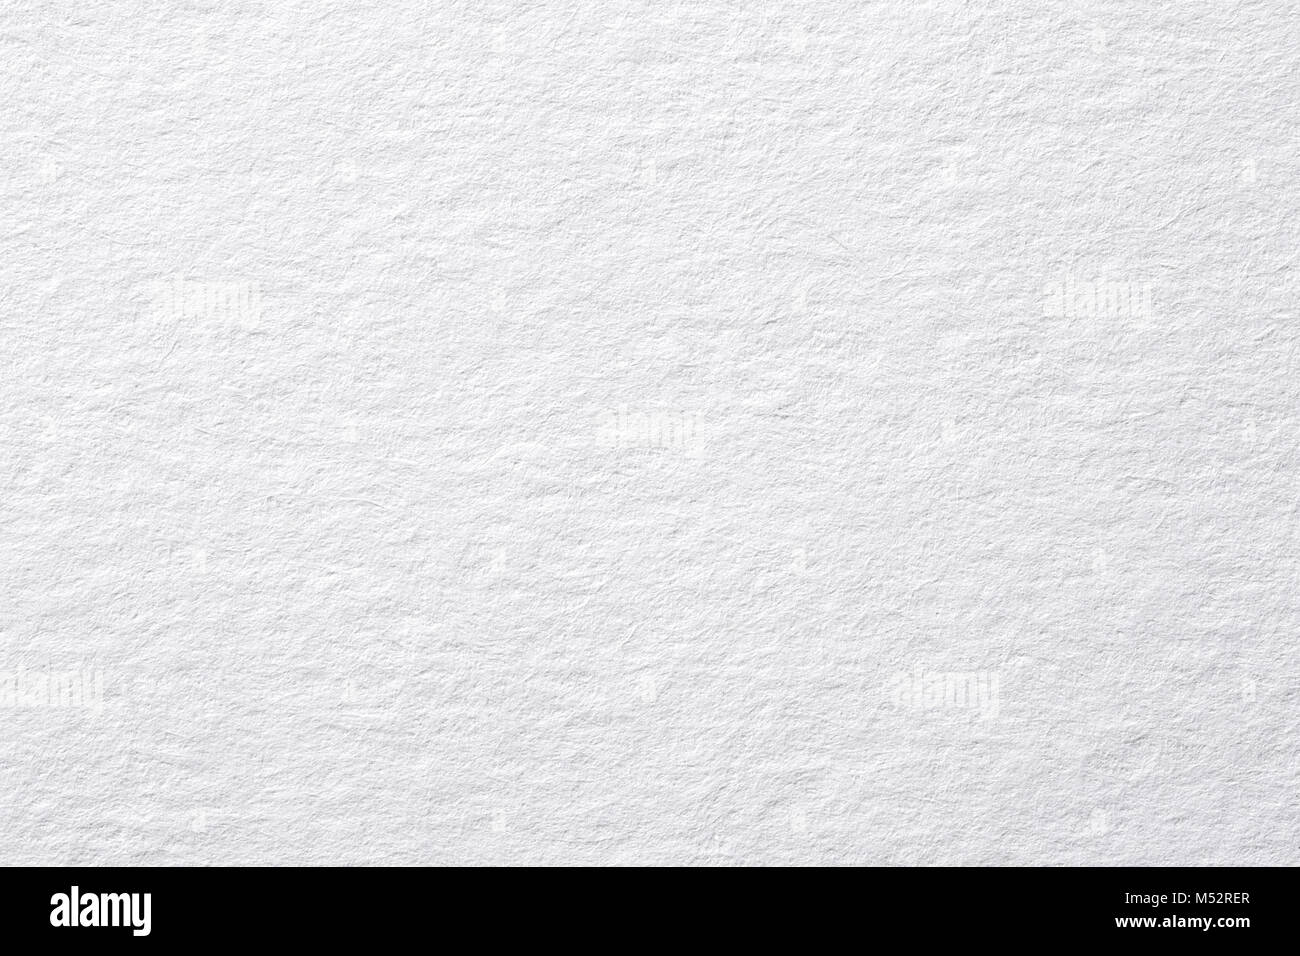 Horizontal blanc note rugueux texture du papier, fond clair pour le texte. Banque D'Images